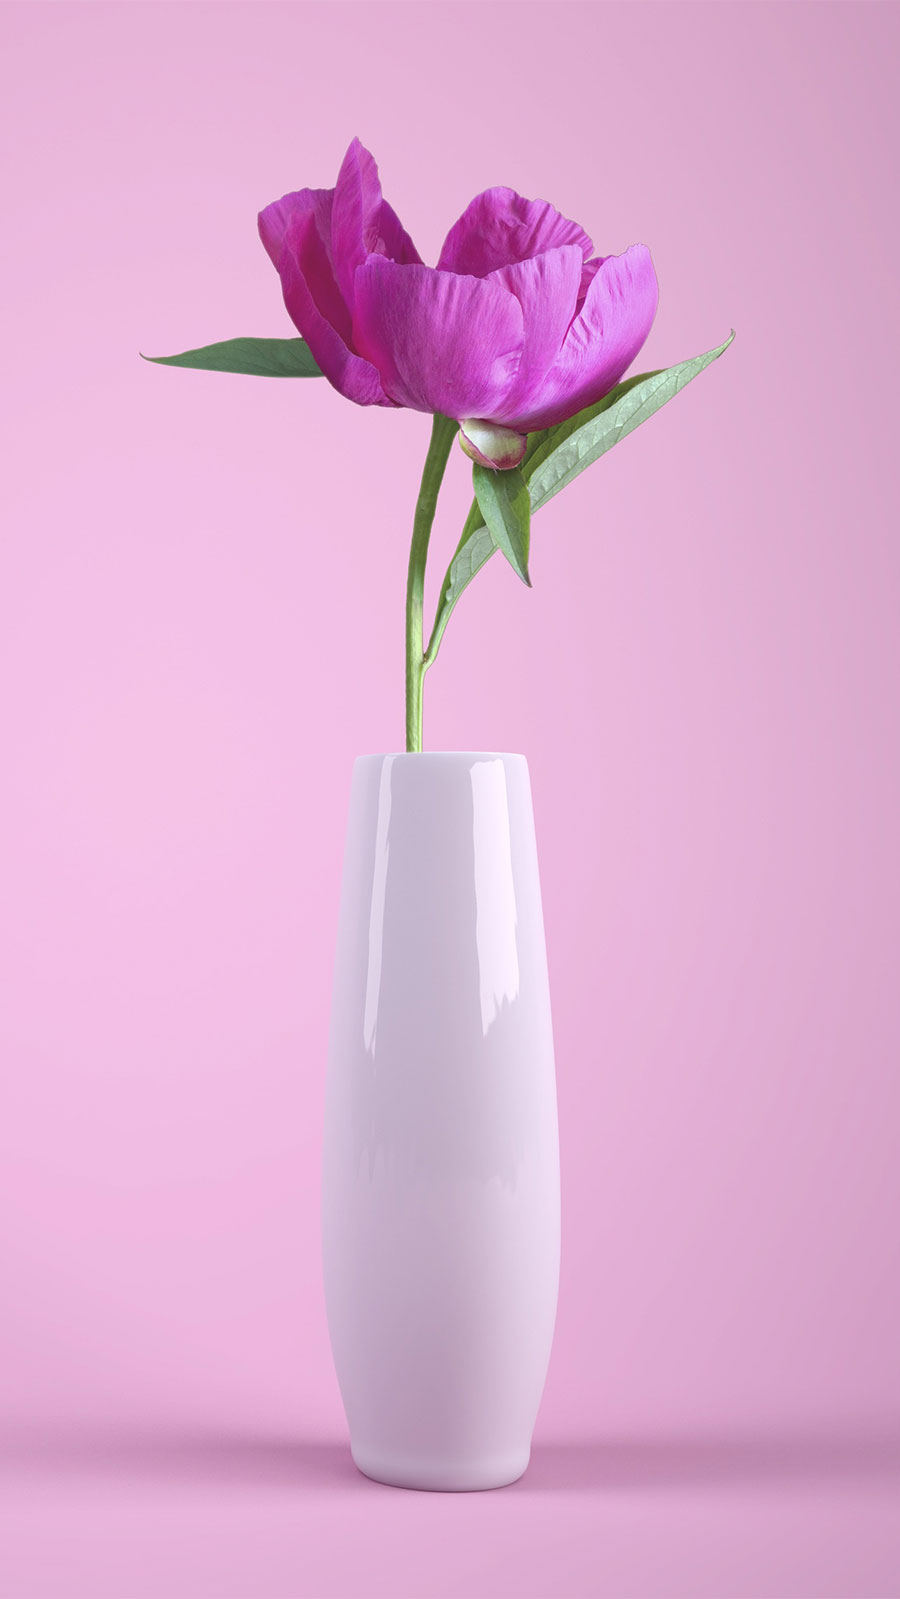 Wallpaper Hd Bunga Flower Warna Pink Di Dalam Vas Mobile - Easier To Love Than Hate Quotes - HD Wallpaper 